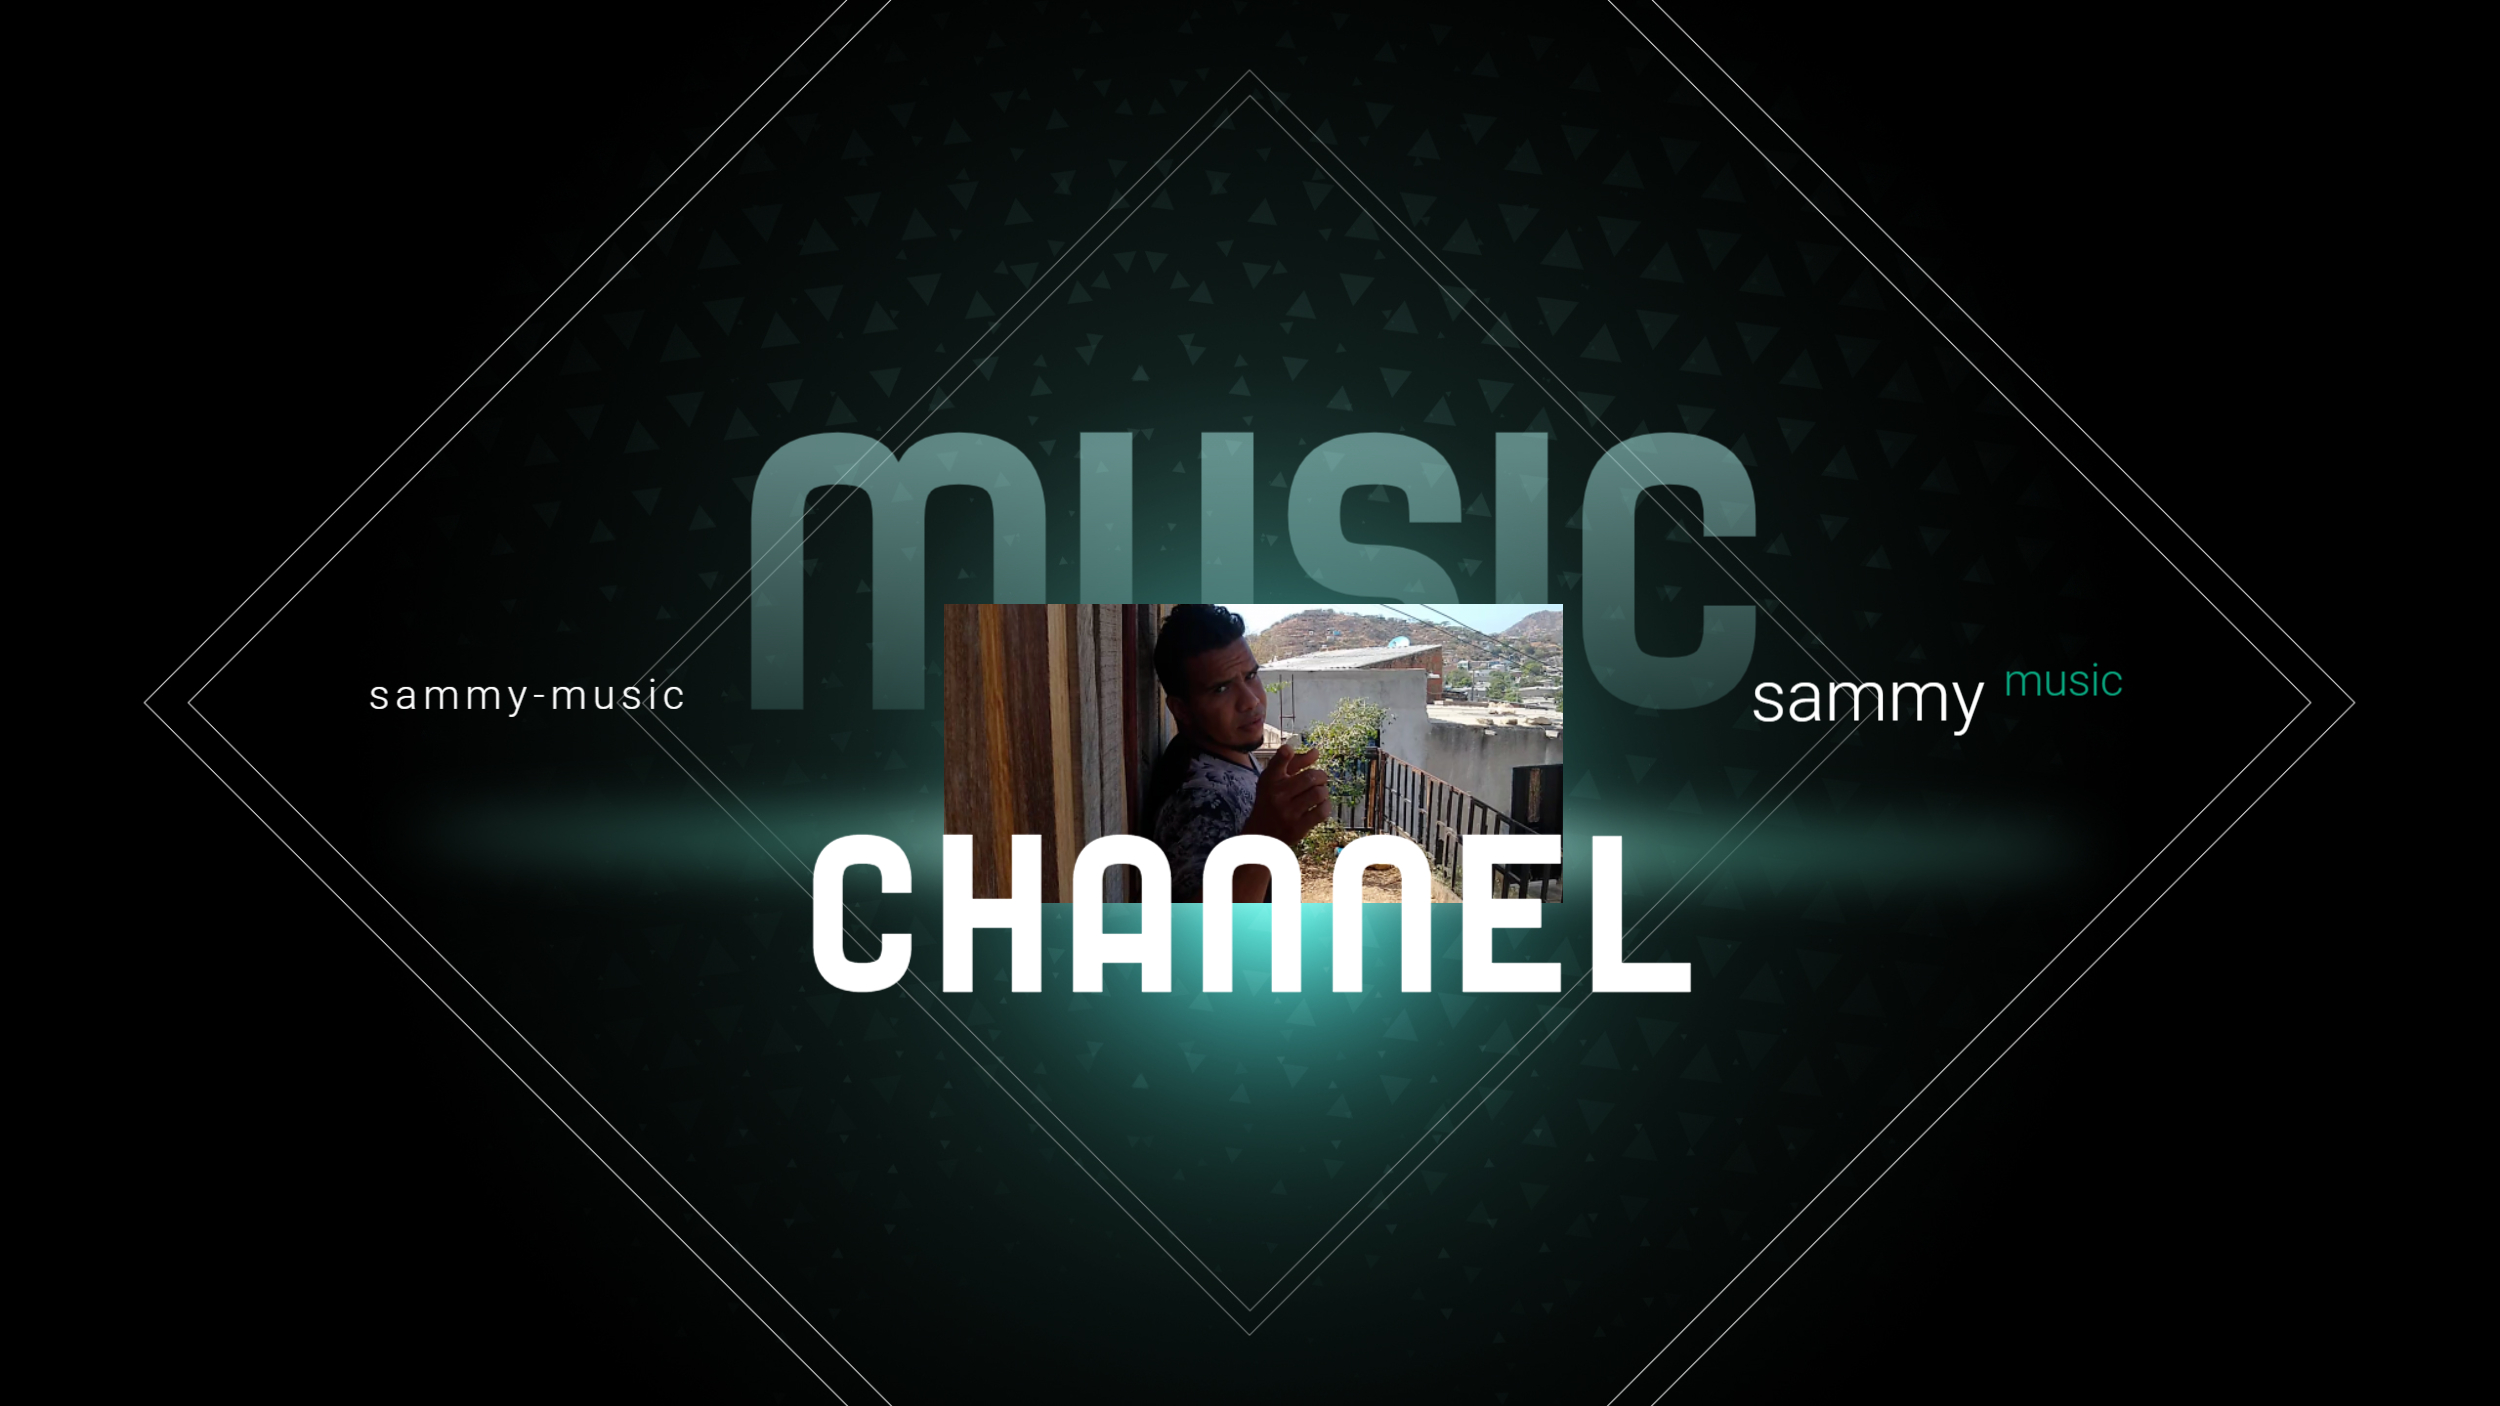 SAMMY- MUSIC